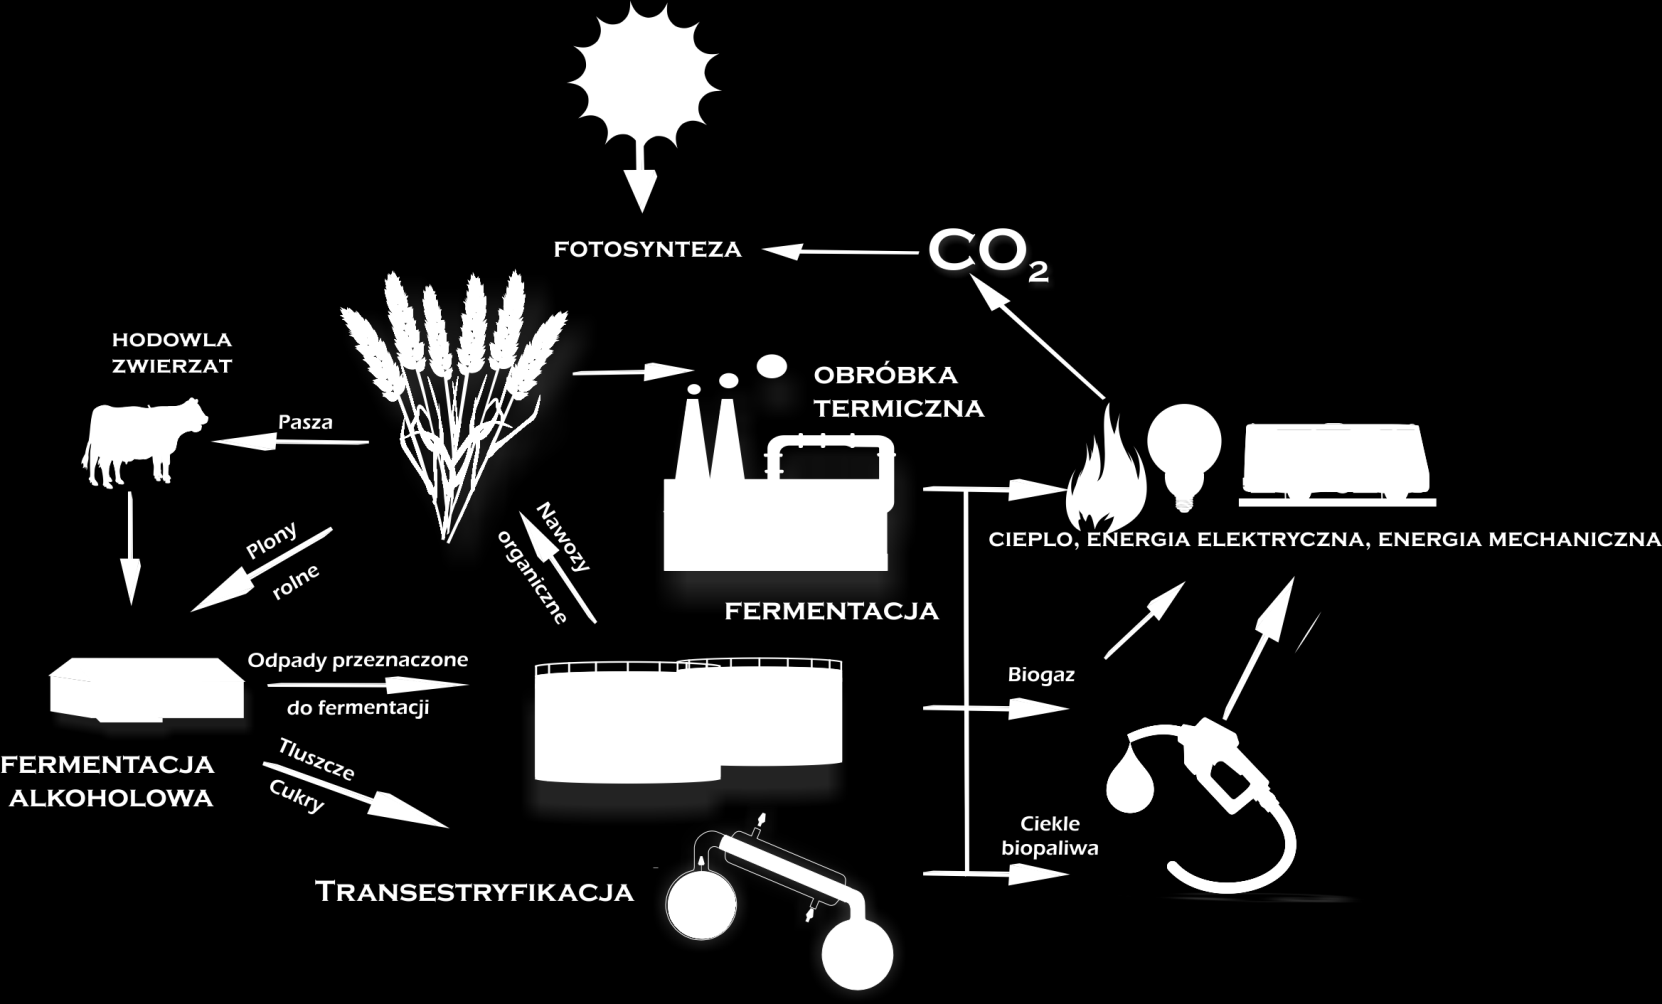 4 Biomasa jako odnawialny surowiec